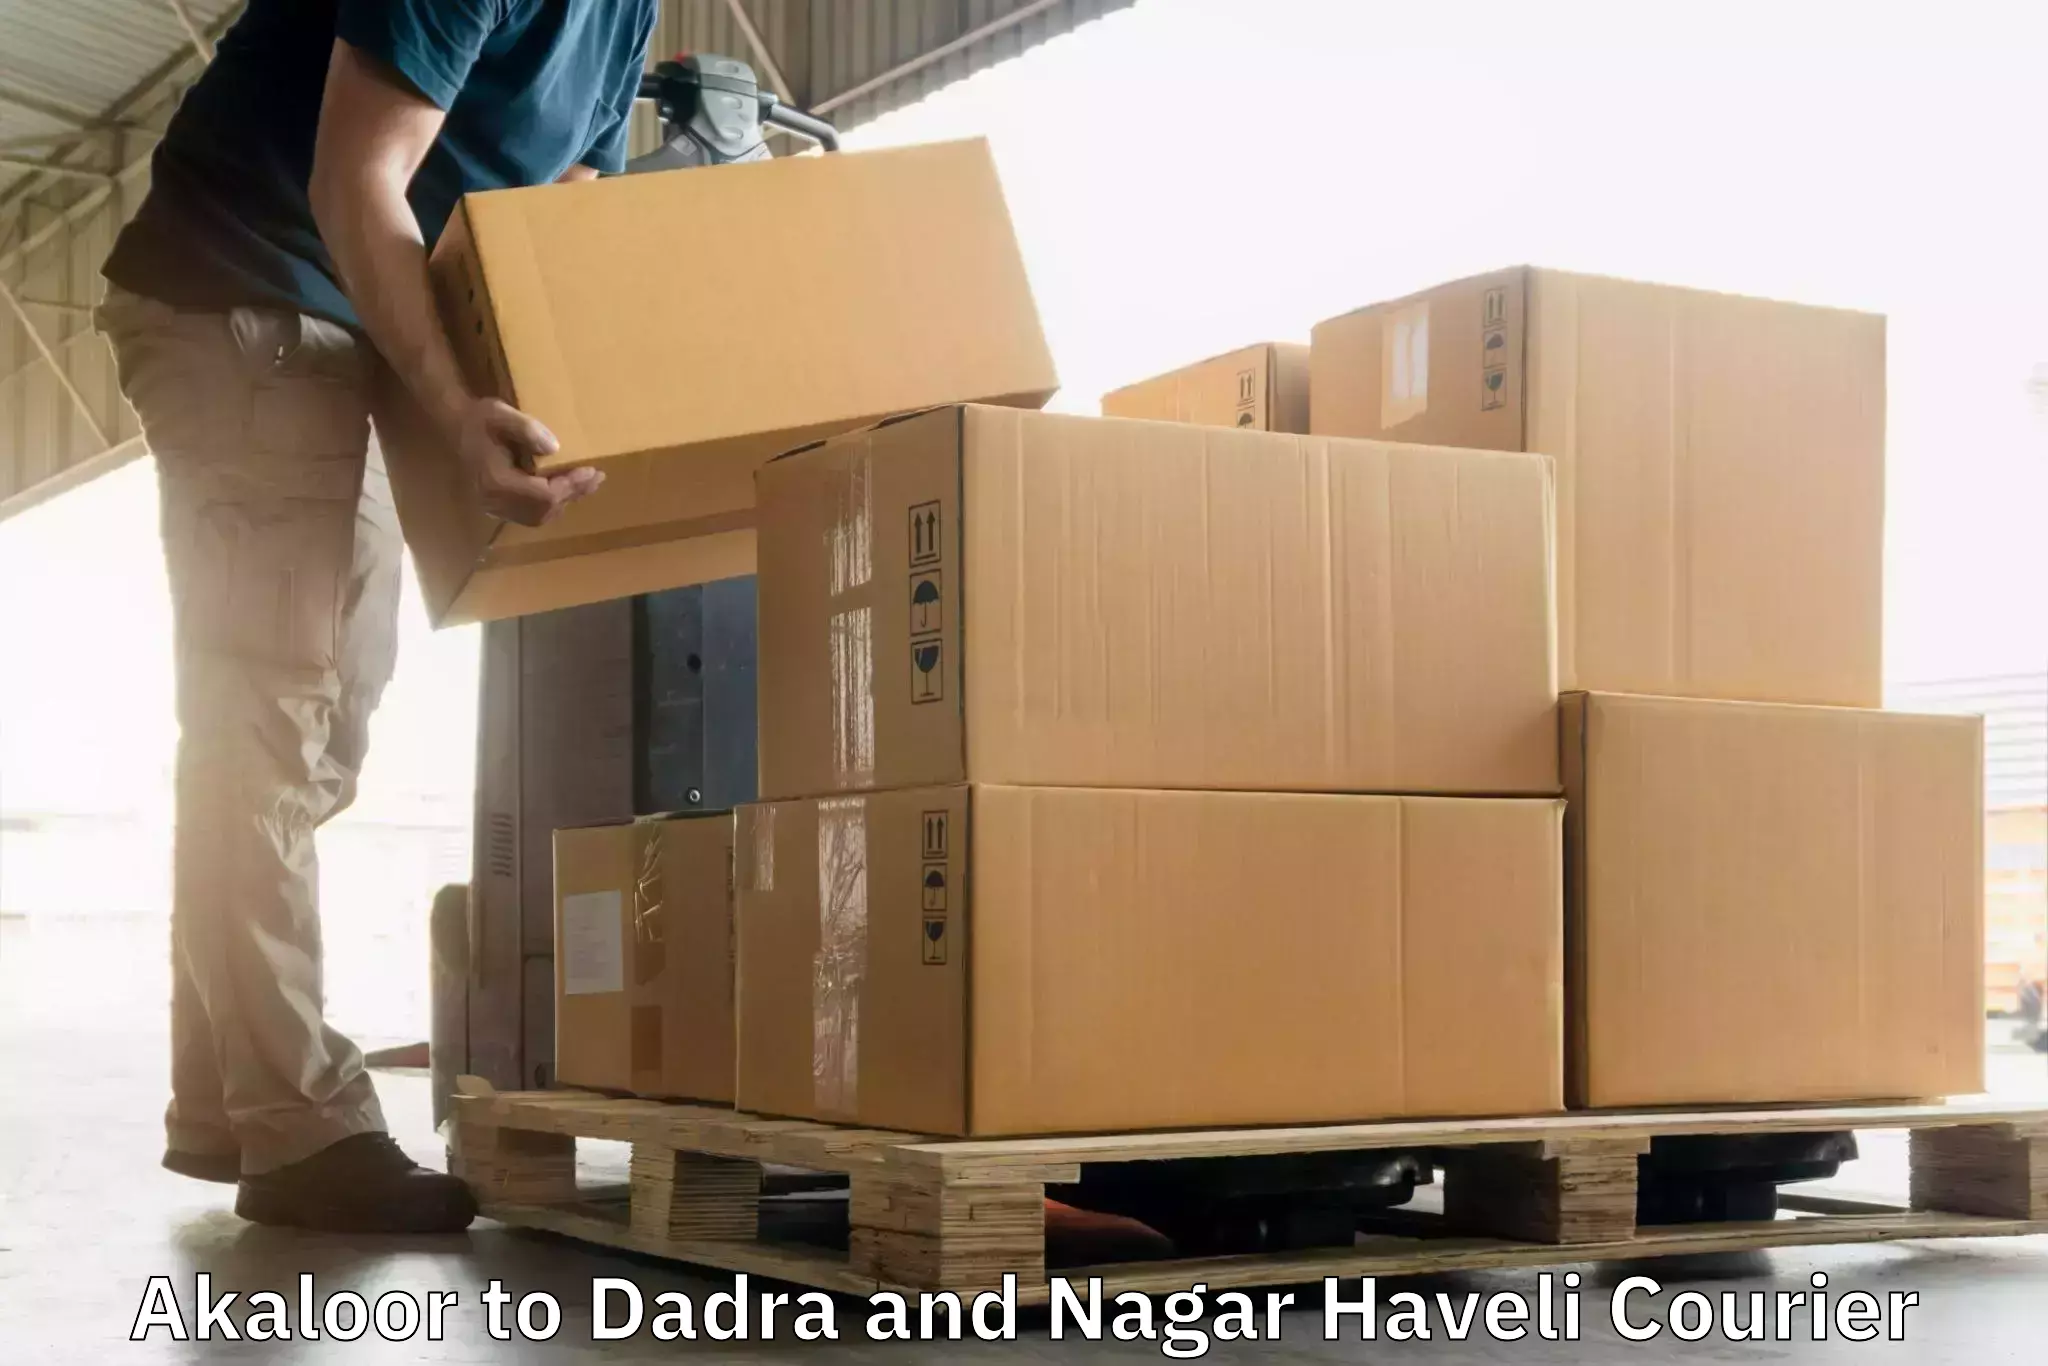 Global shipping solutions Akaloor to Dadra and Nagar Haveli